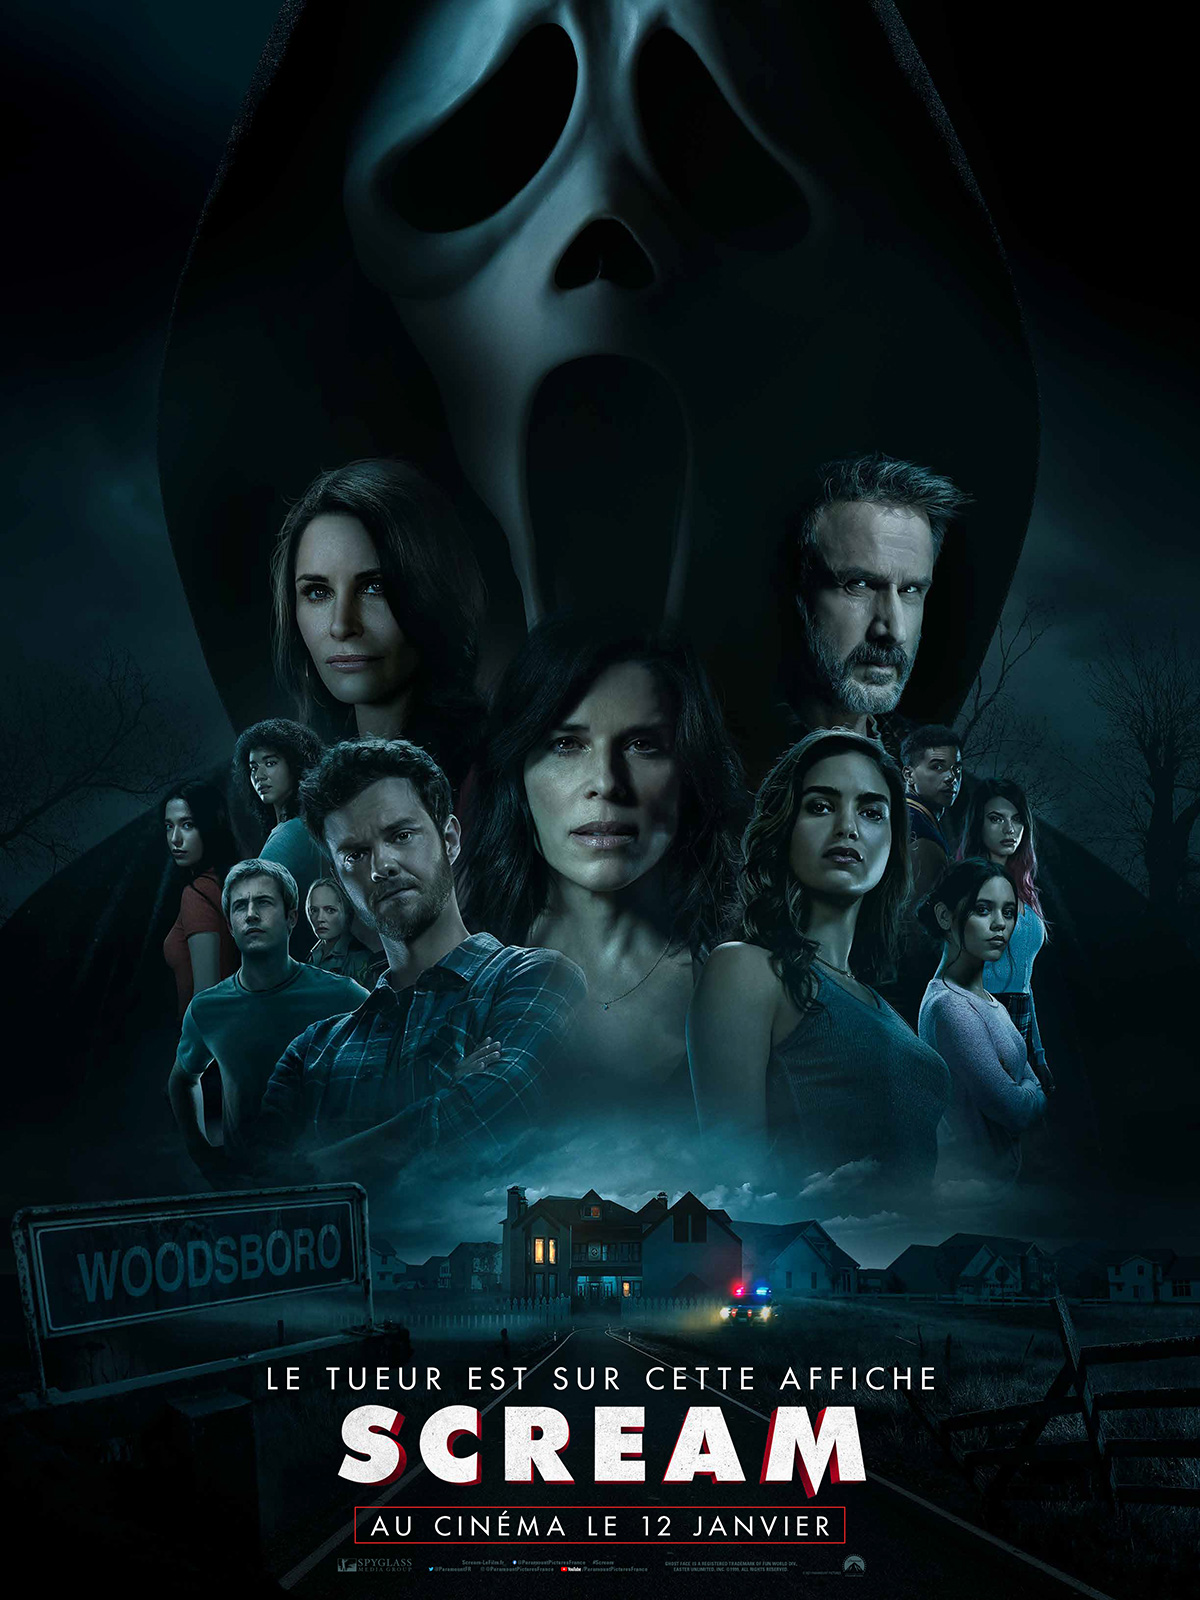  L'affiche de Scream 5